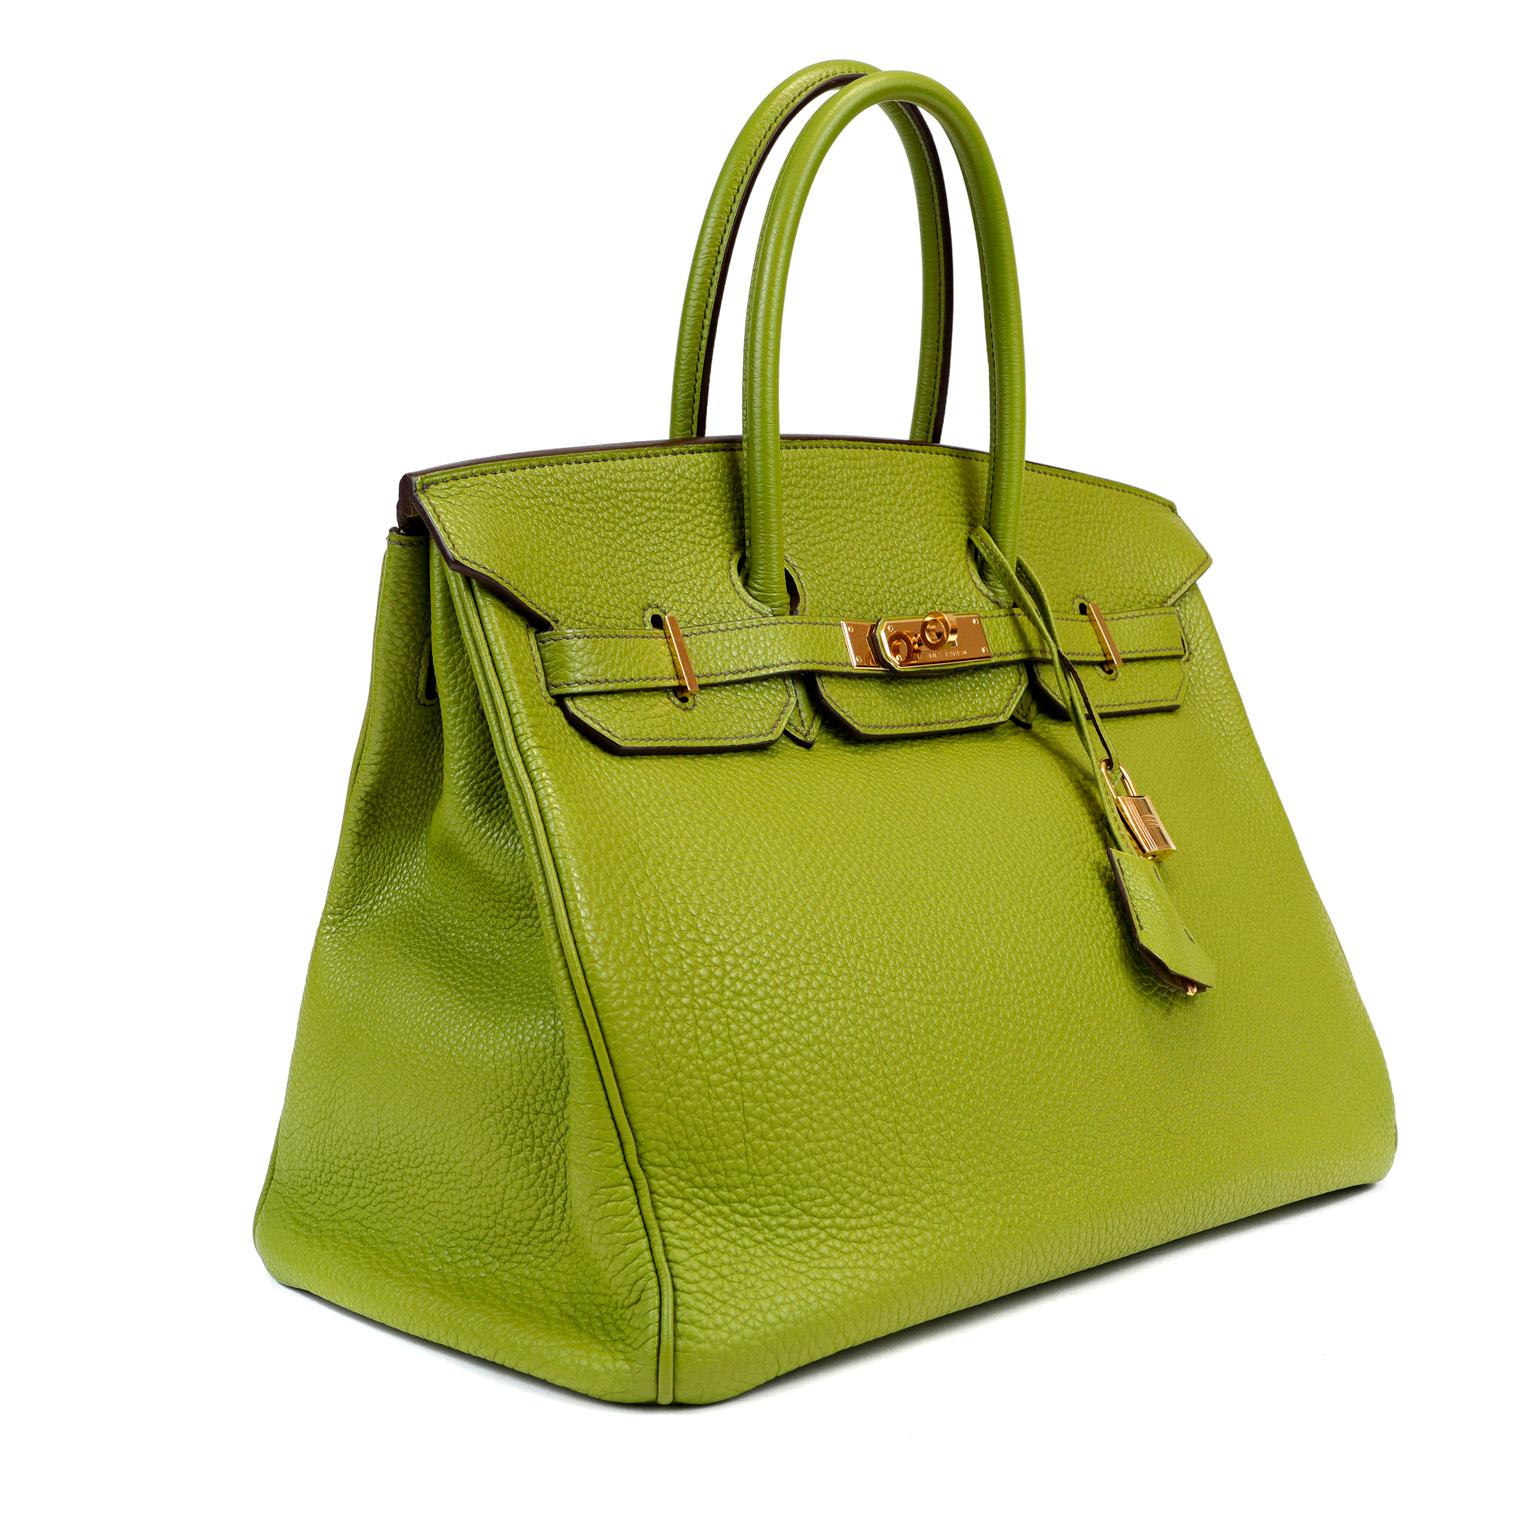 Diese authentische Hermès Green Togo 35 cm Birkin ist in ausgezeichnetem Zustand. Für die Birkin von Hermès, die von erfahrenen Handwerkern handgenäht wird, gibt es oft Wartelisten von einem Jahr und mehr. Das prächtige Granny Apple Green in